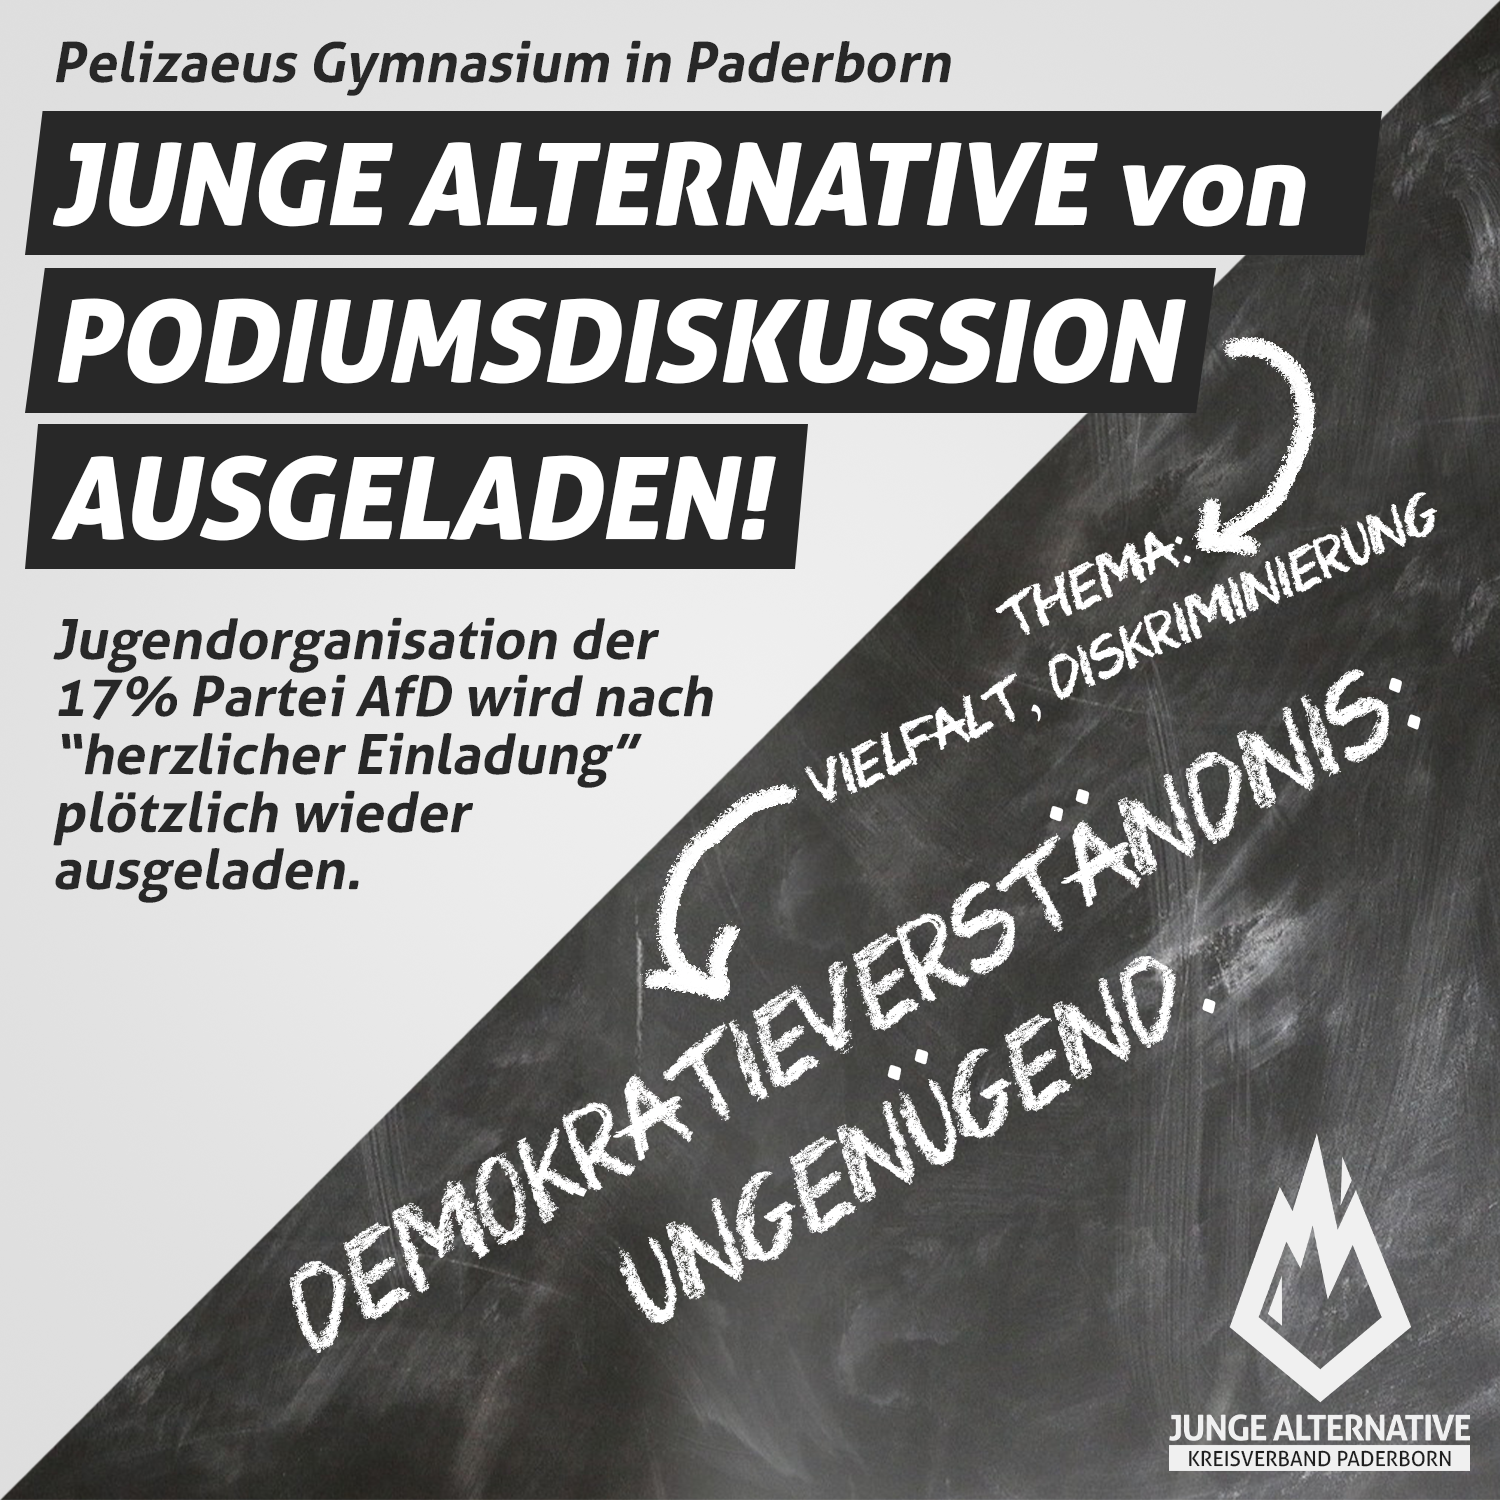 Read more about the article JA Paderborn von Diskussion an Pelizaeus Gymnasium ausgeladen!